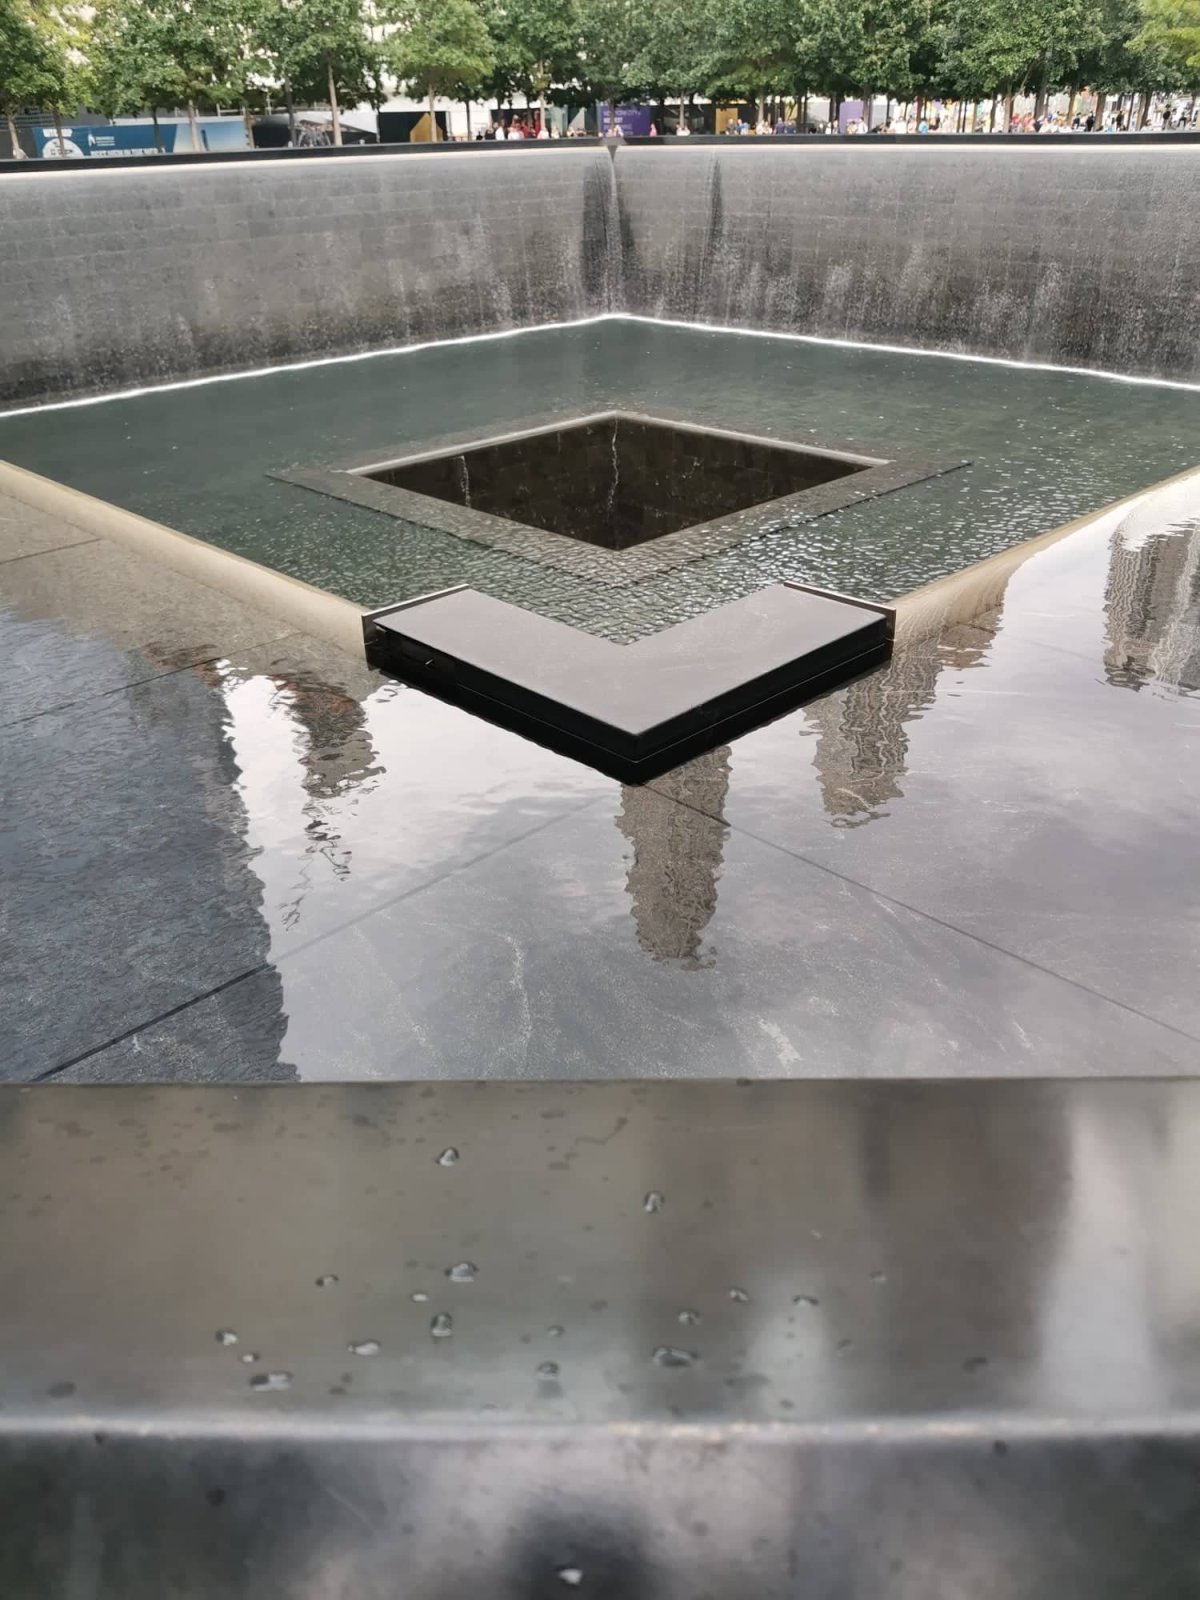 Památník událostí 11. září, pod nímž je pěkně zpracované muzeum